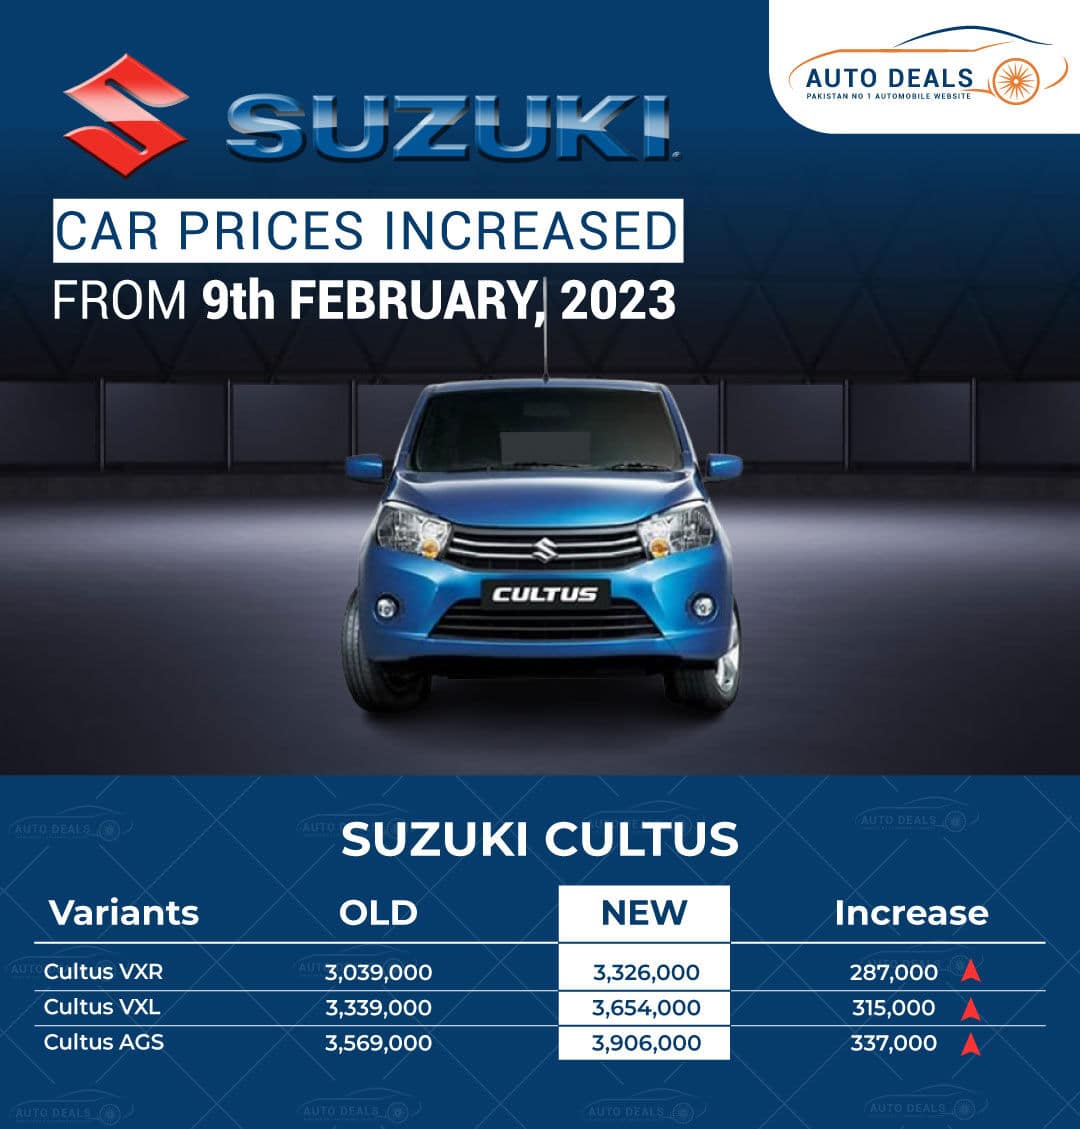 Suzuki Cultus New Prices 2023